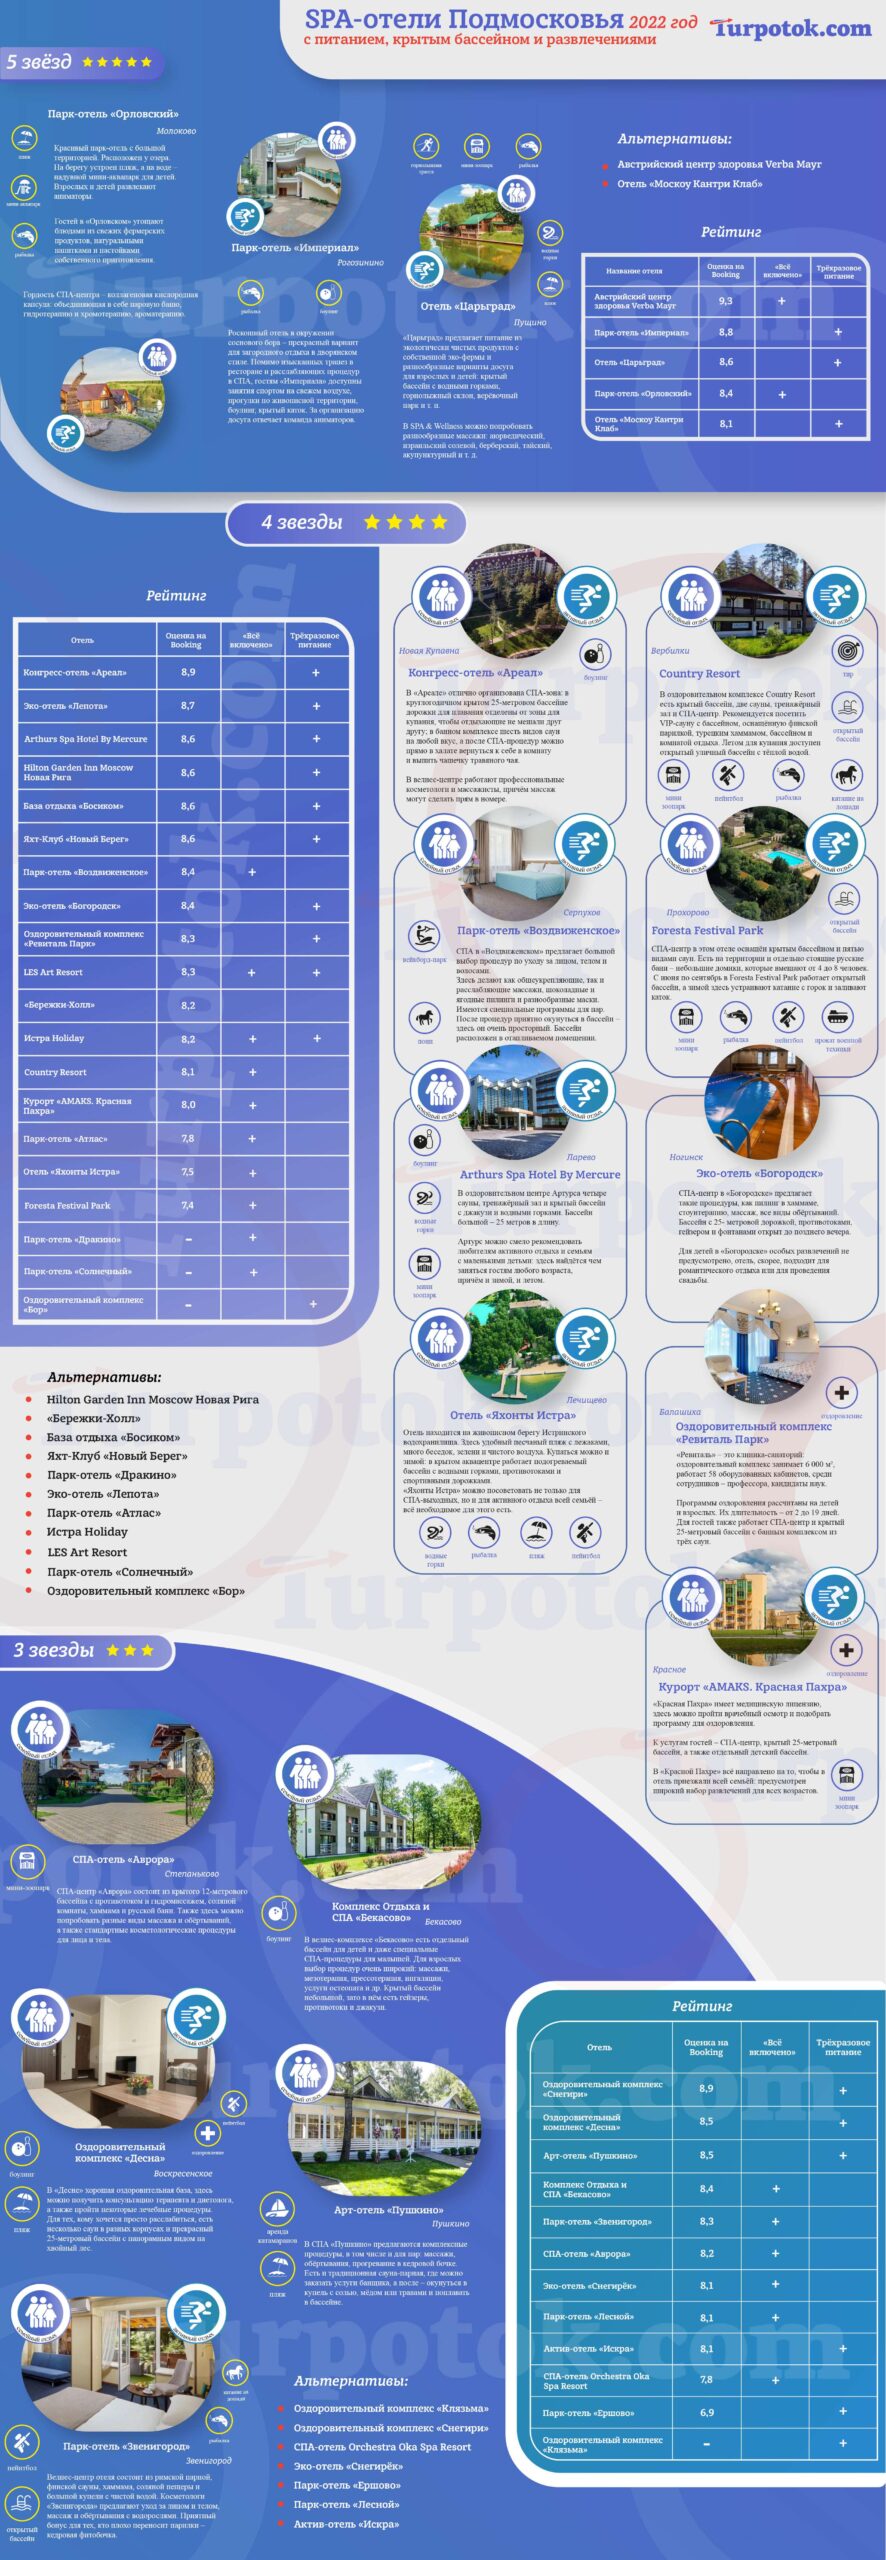 Инфографика про отели в Московской области с SPA